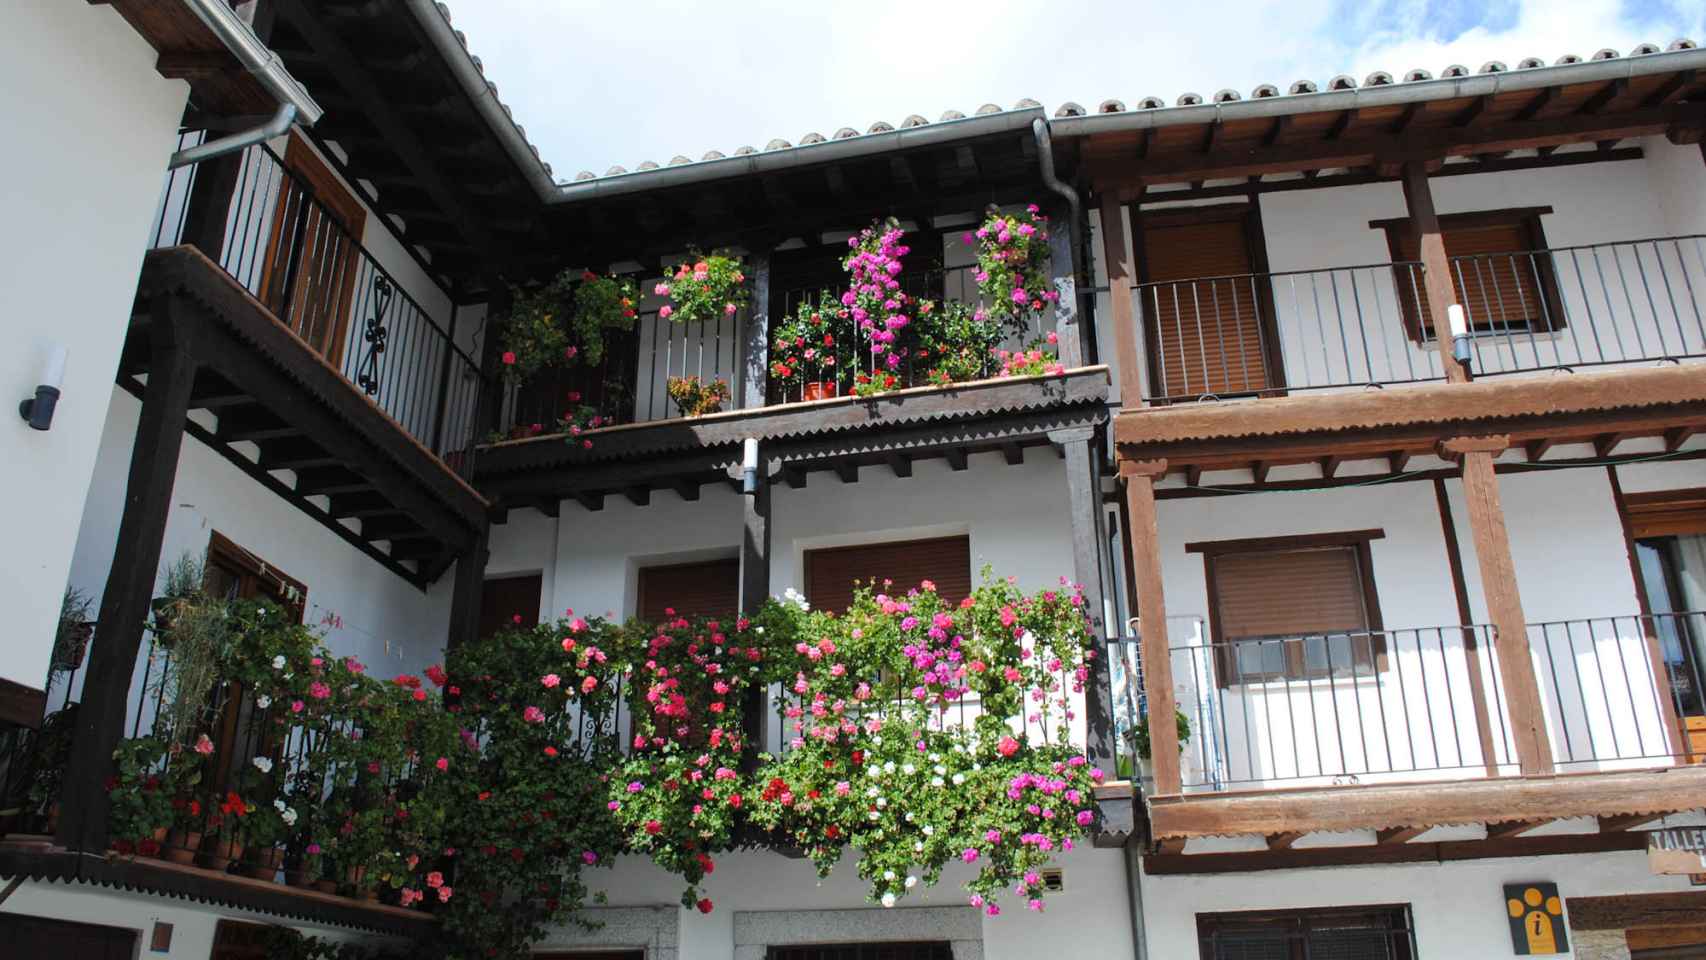 Arquitectura tradicional en Montemayor del Río.jpg